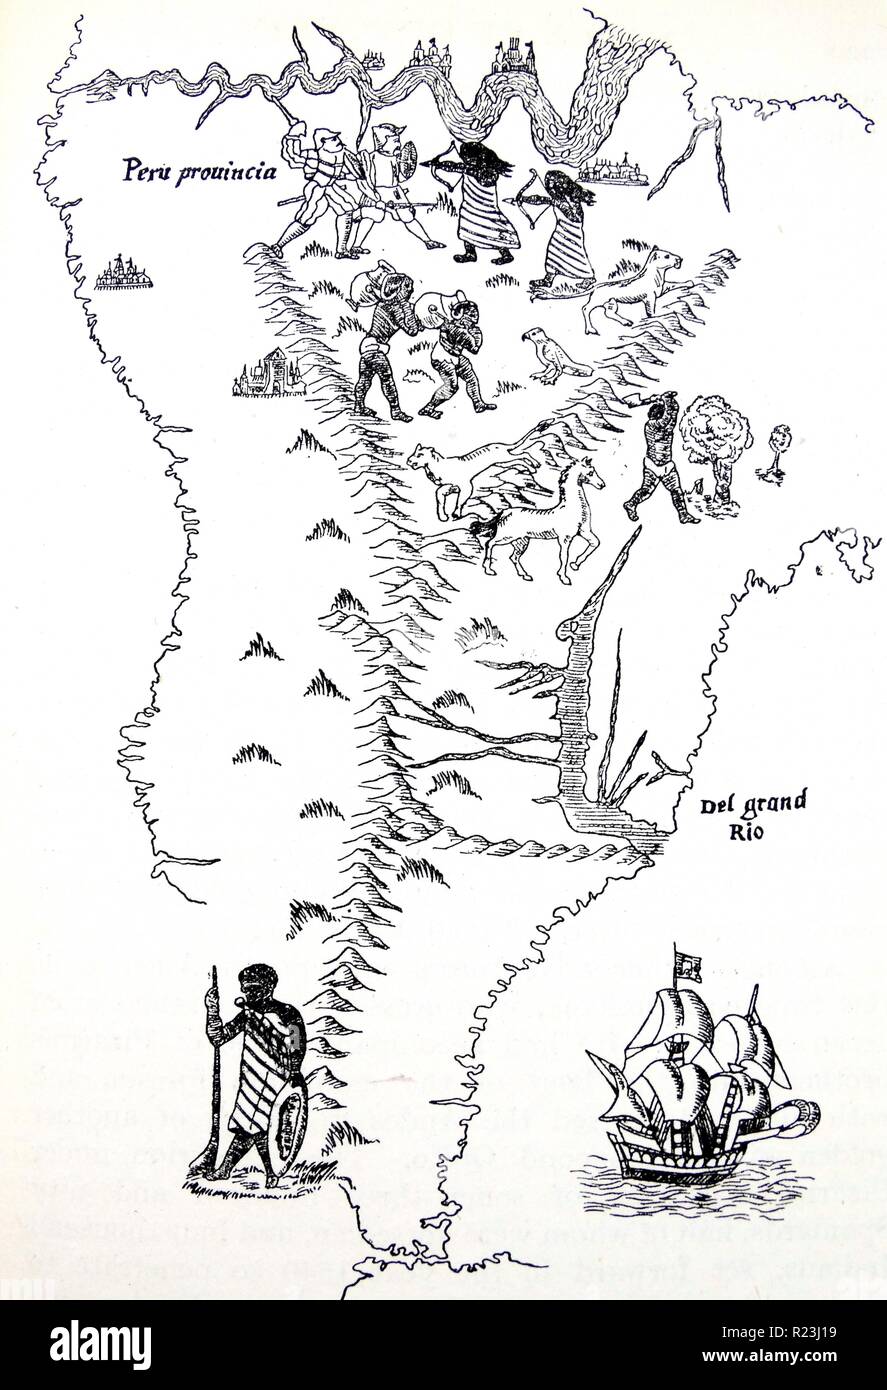 In Perù e in Sud America. Dalla mappa del mondo del 1544, solitamente attribuiti a Sebastian Cabot. Nella parte superiore è mostrato il fiume Amazon, scoperto da Orellana nel 1541. Foto Stock